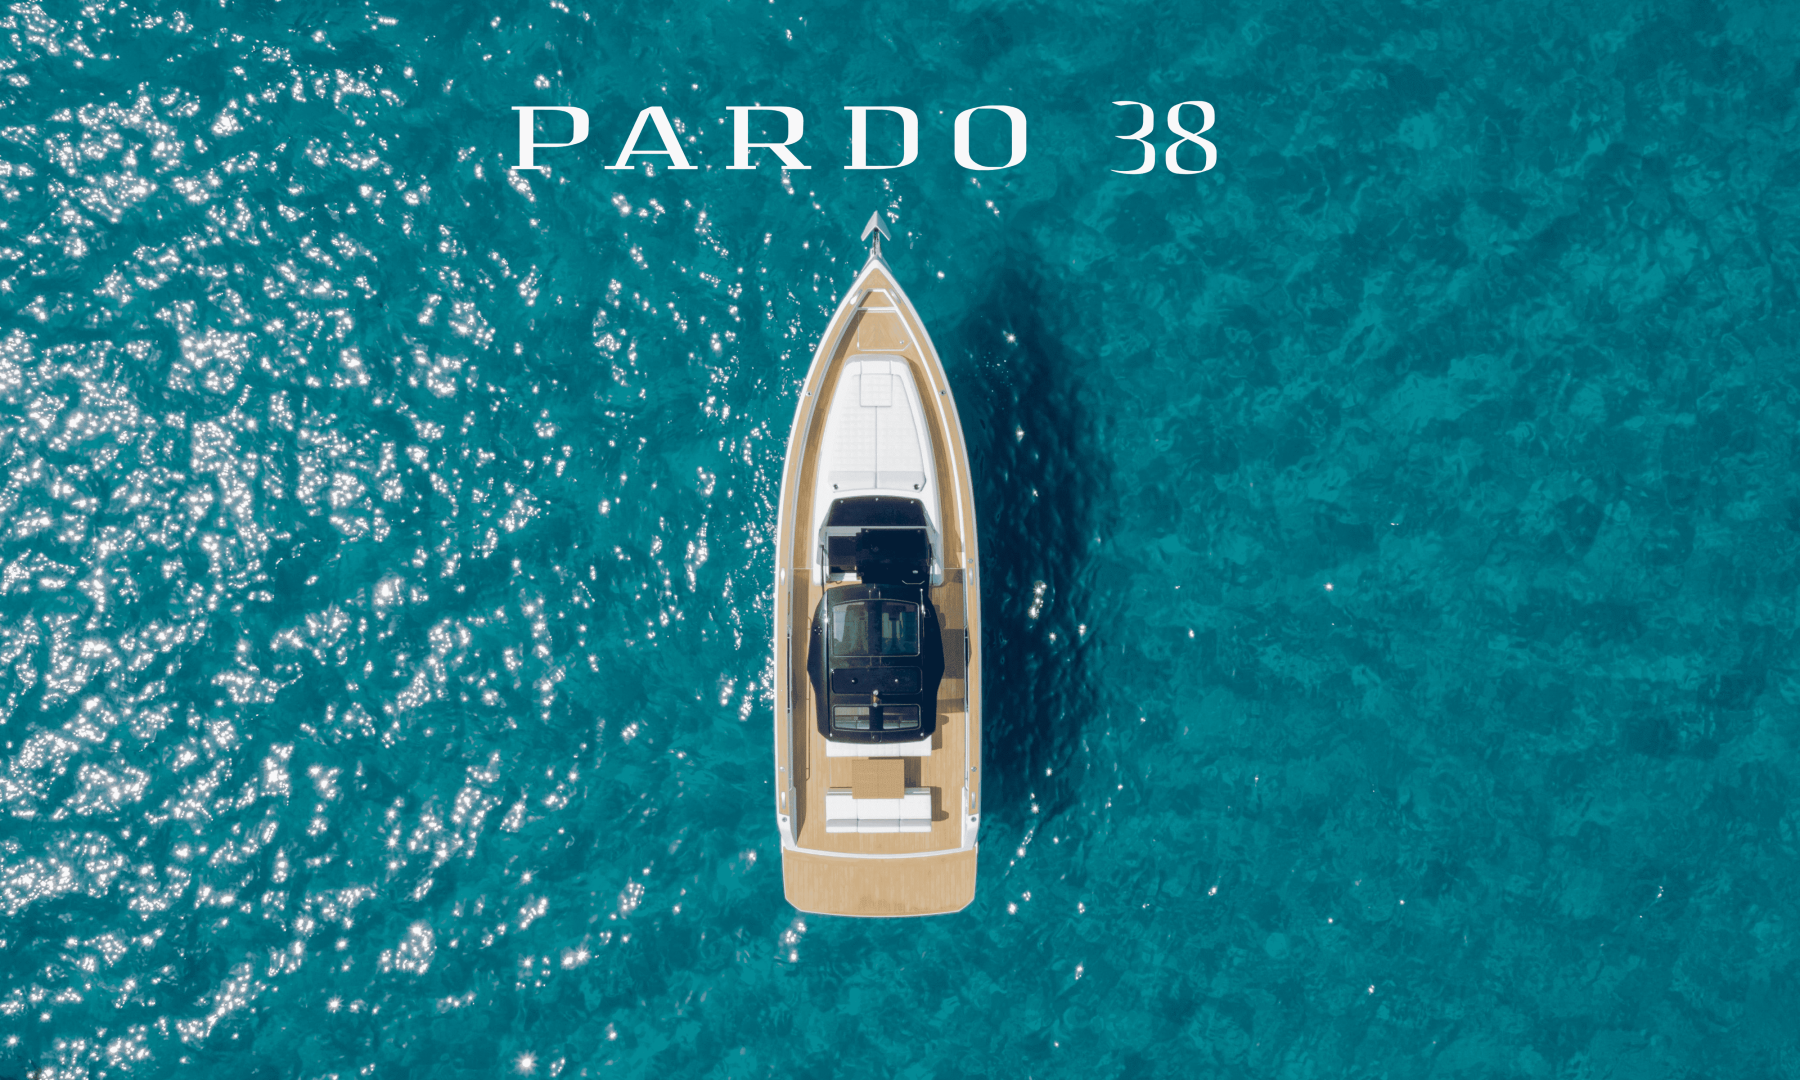 The new Pardo 38 World Premiere 